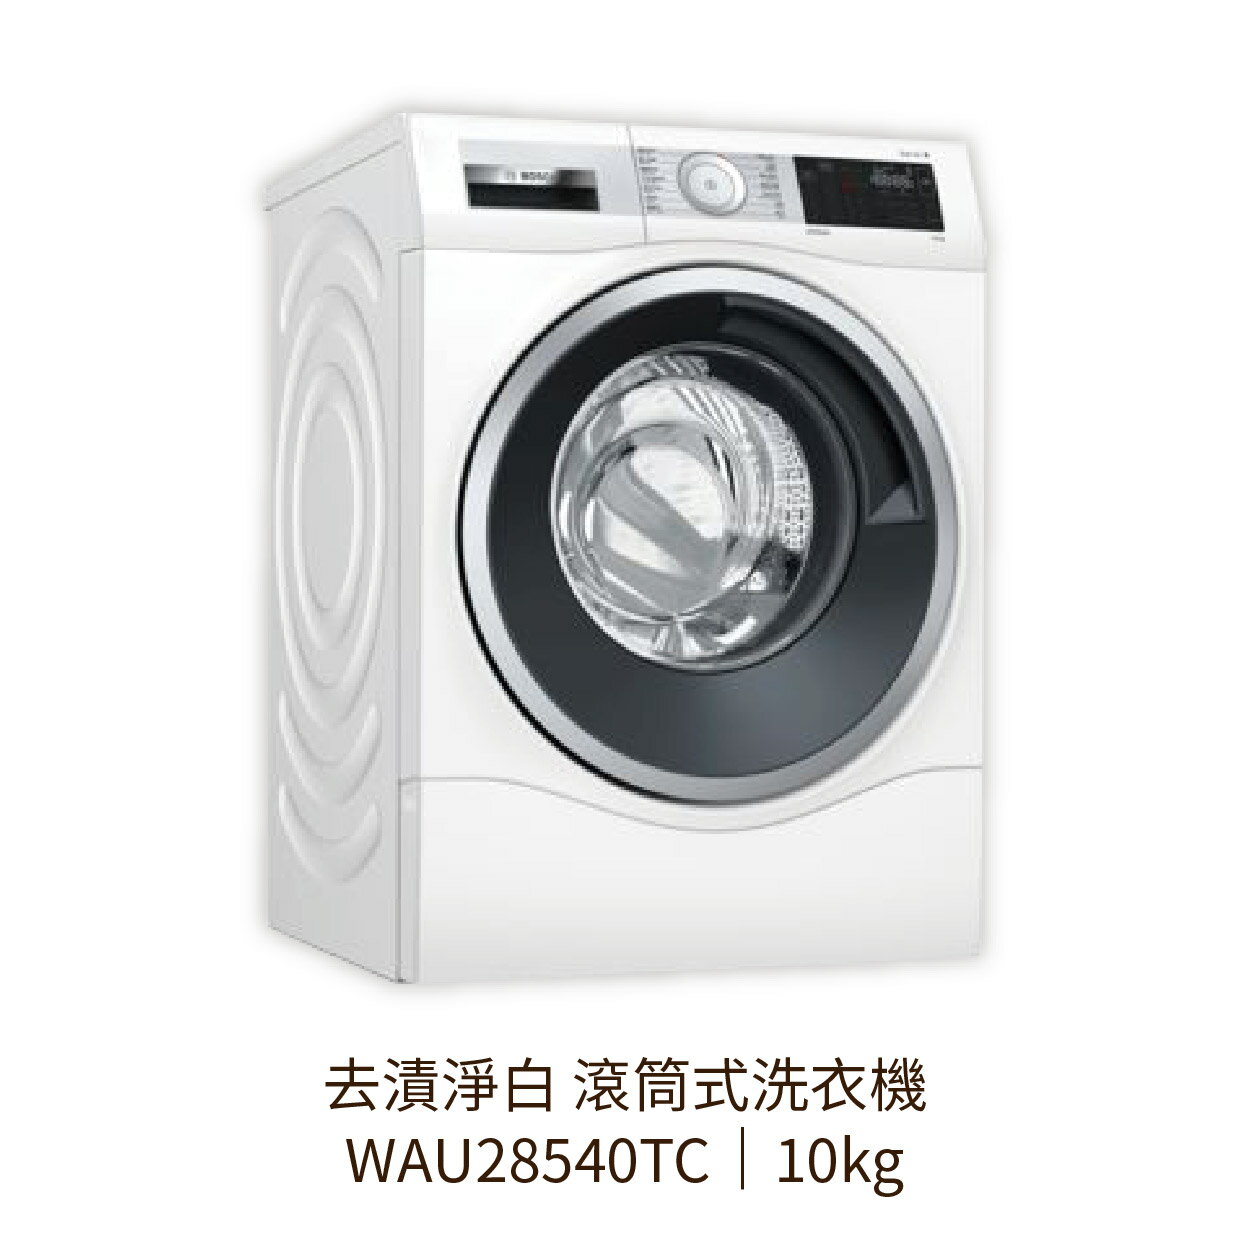 【點數10%回饋】✨安裝客服報價✨ BOSCH博世家電 WAU28540TC 10KG 滾筒式去漬淨白洗衣機